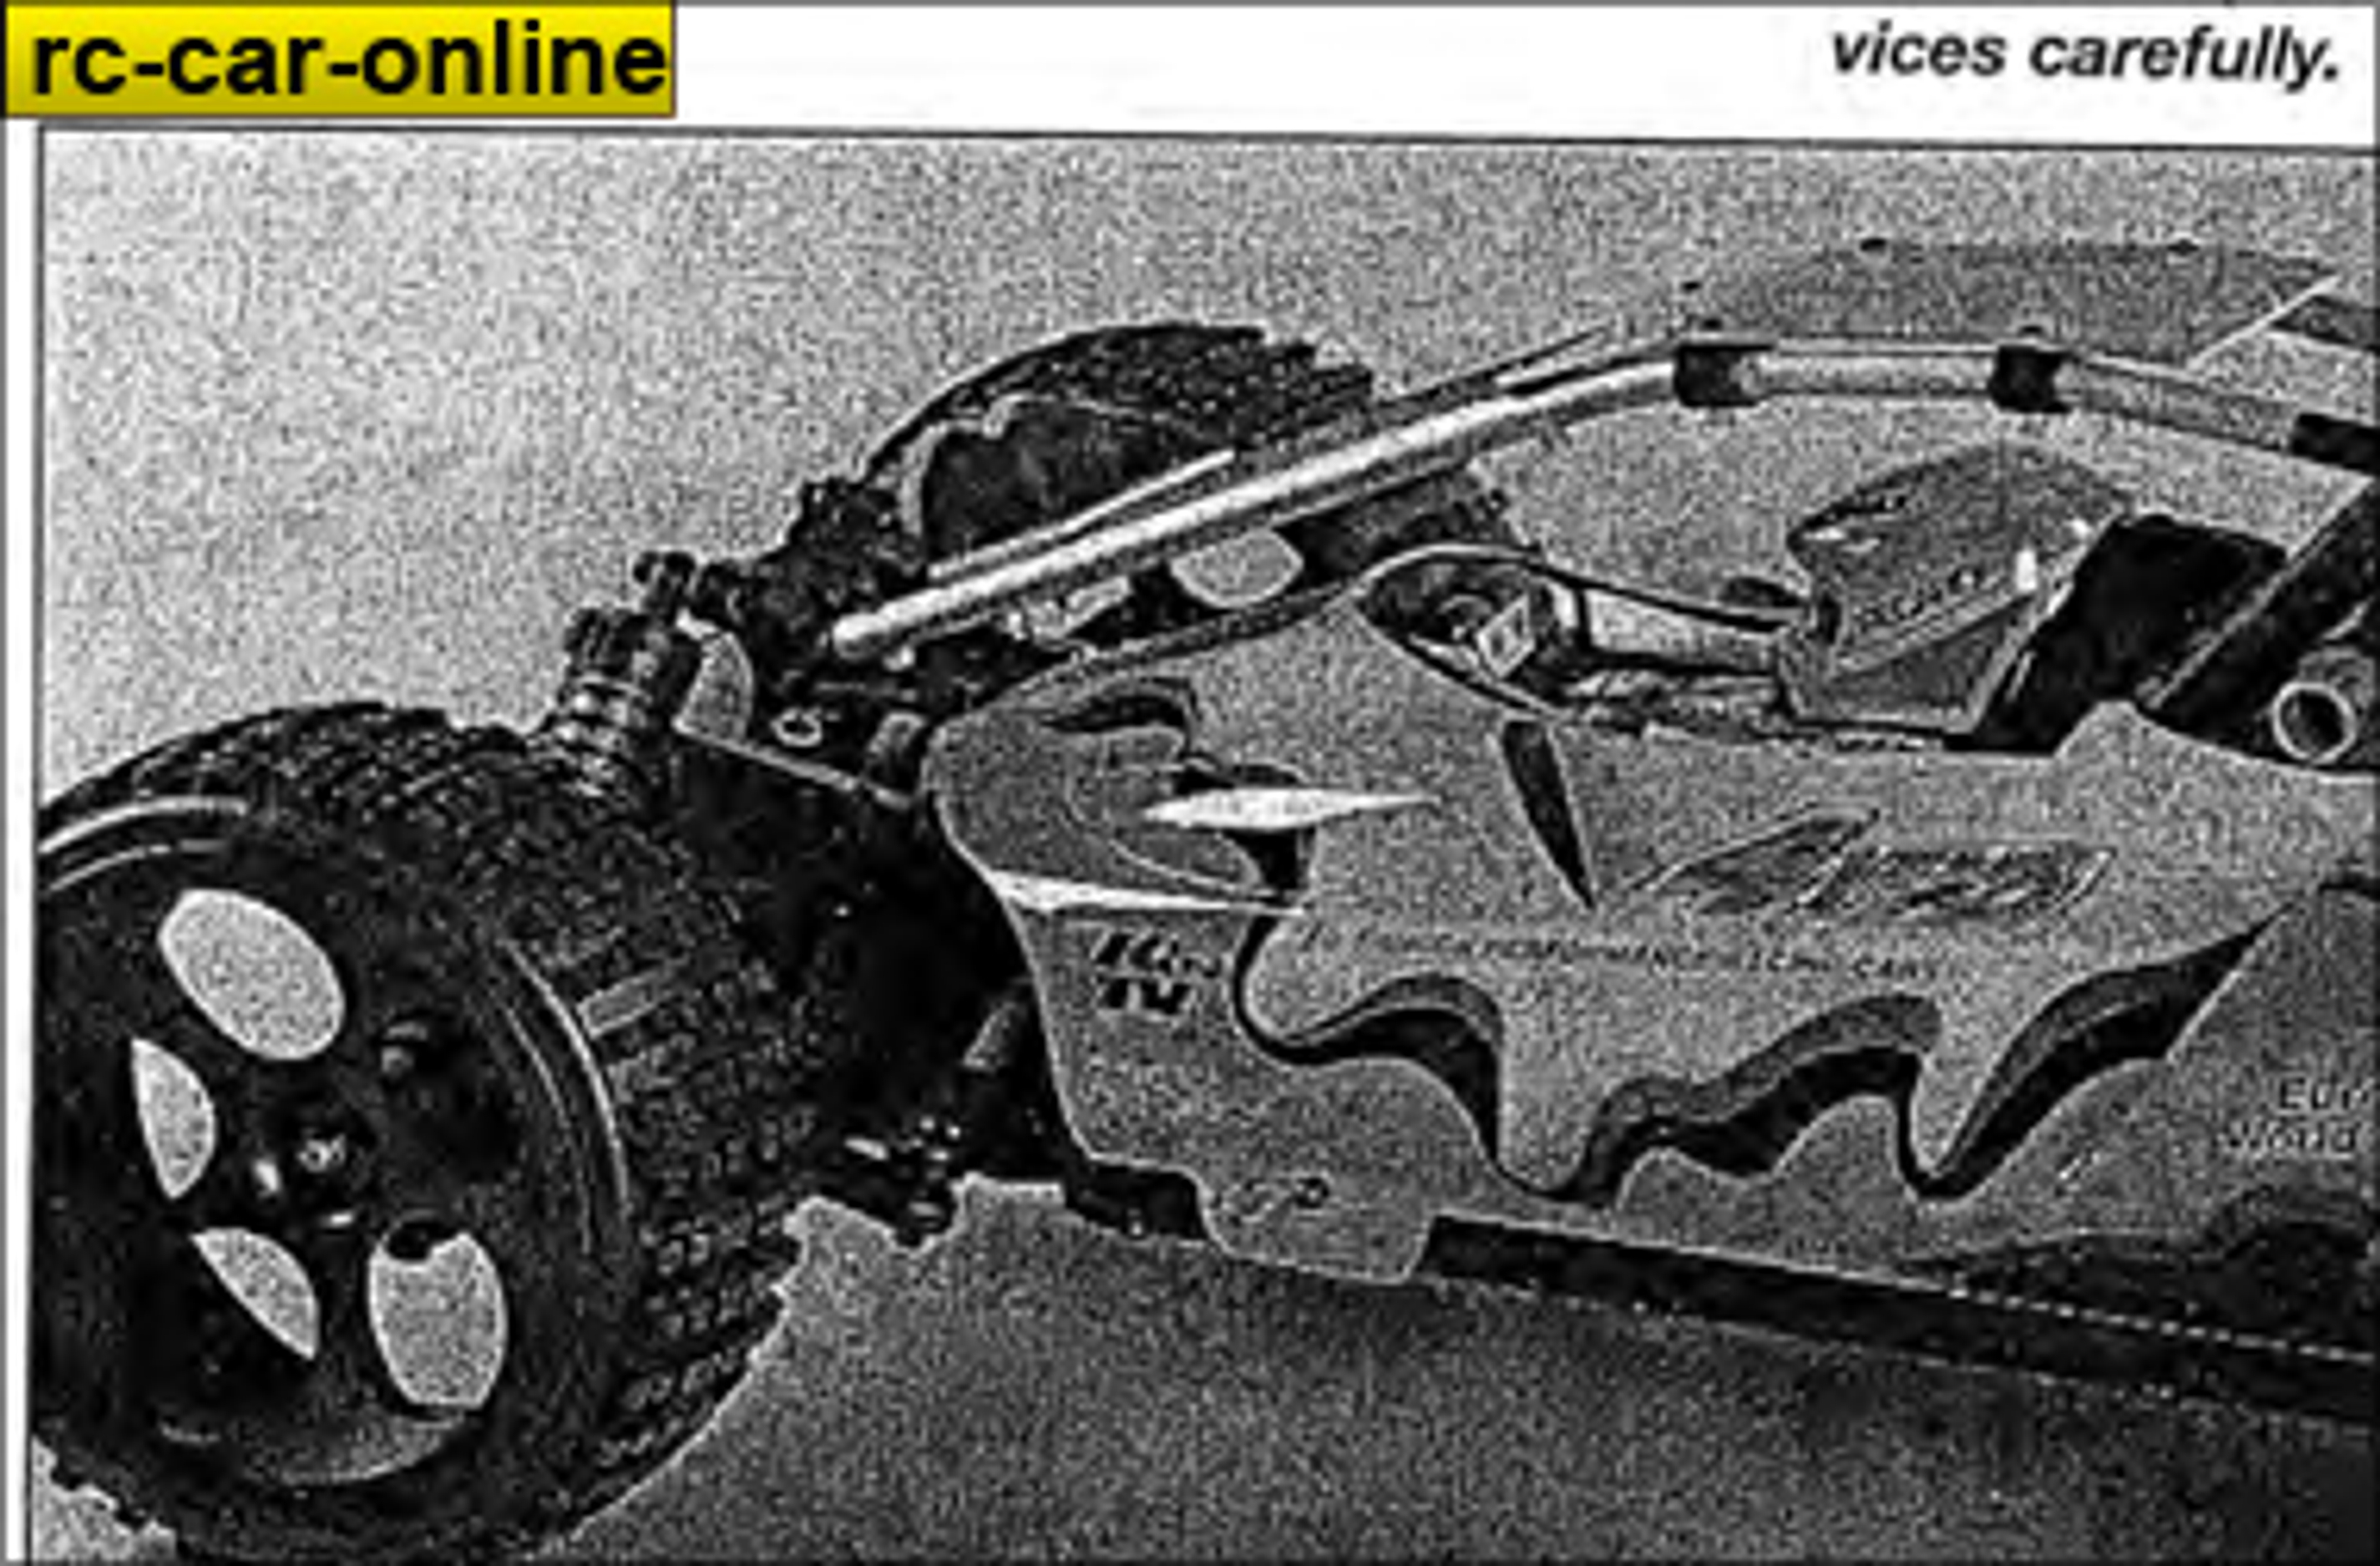 y0962/02 FG manuals set Off-Road Buggy 4WD Sportsline WB535 English/German, set